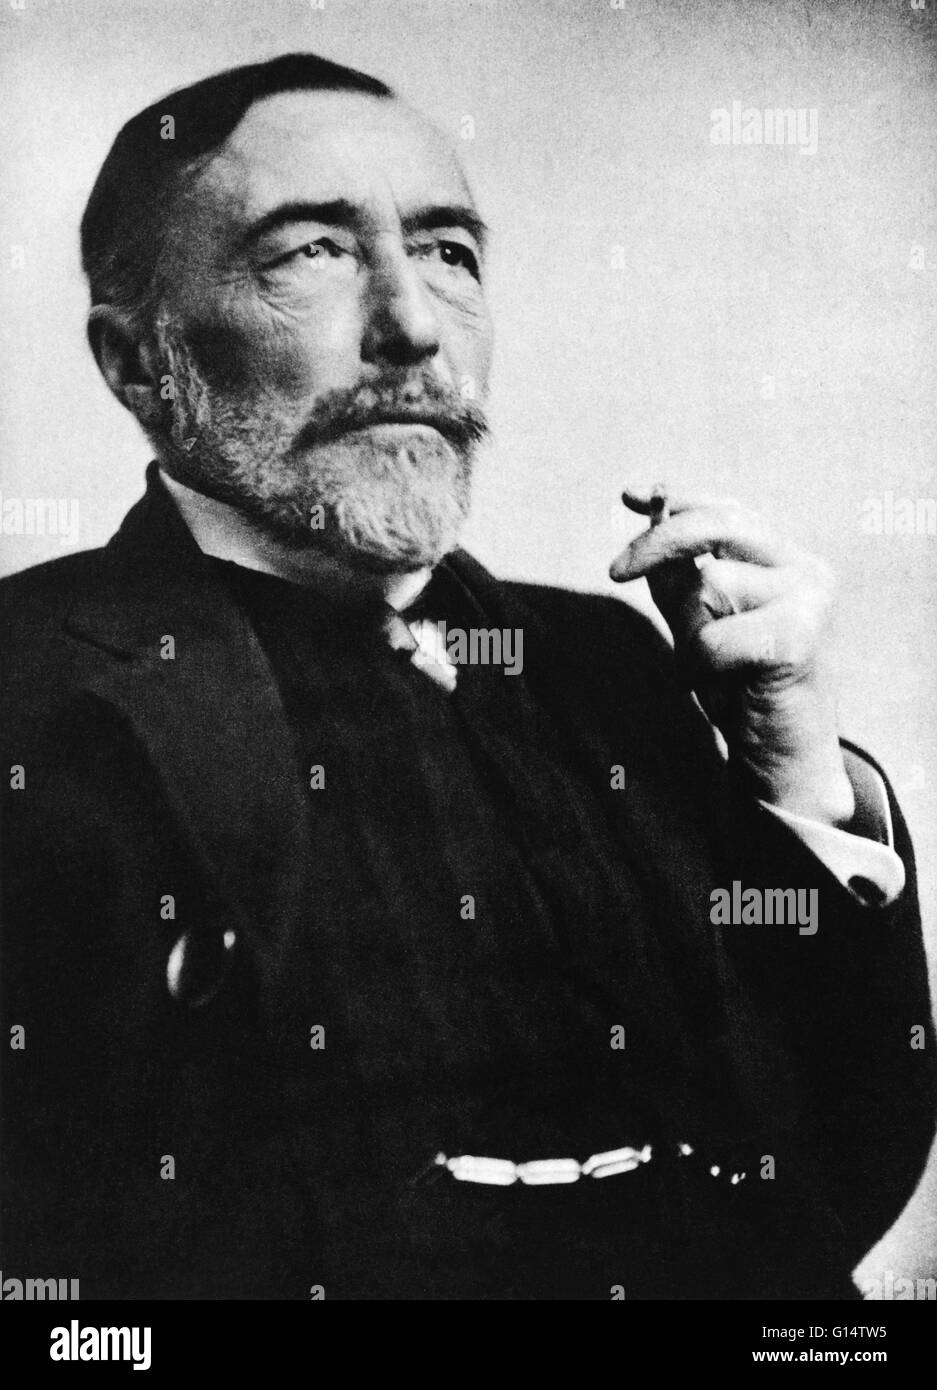 Retrato de Conrad. Joseph Conrad (3 de diciembre de 1857 - 3 de agosto de 1924) fue un autor polaco que escribió en inglés después de asentarse en Inglaterra. Le fue otorgada la nacionalidad británica en 1886, pero siempre se consideró a sí mismo un polo. Conrad es considerado como uno de los gr Foto de stock